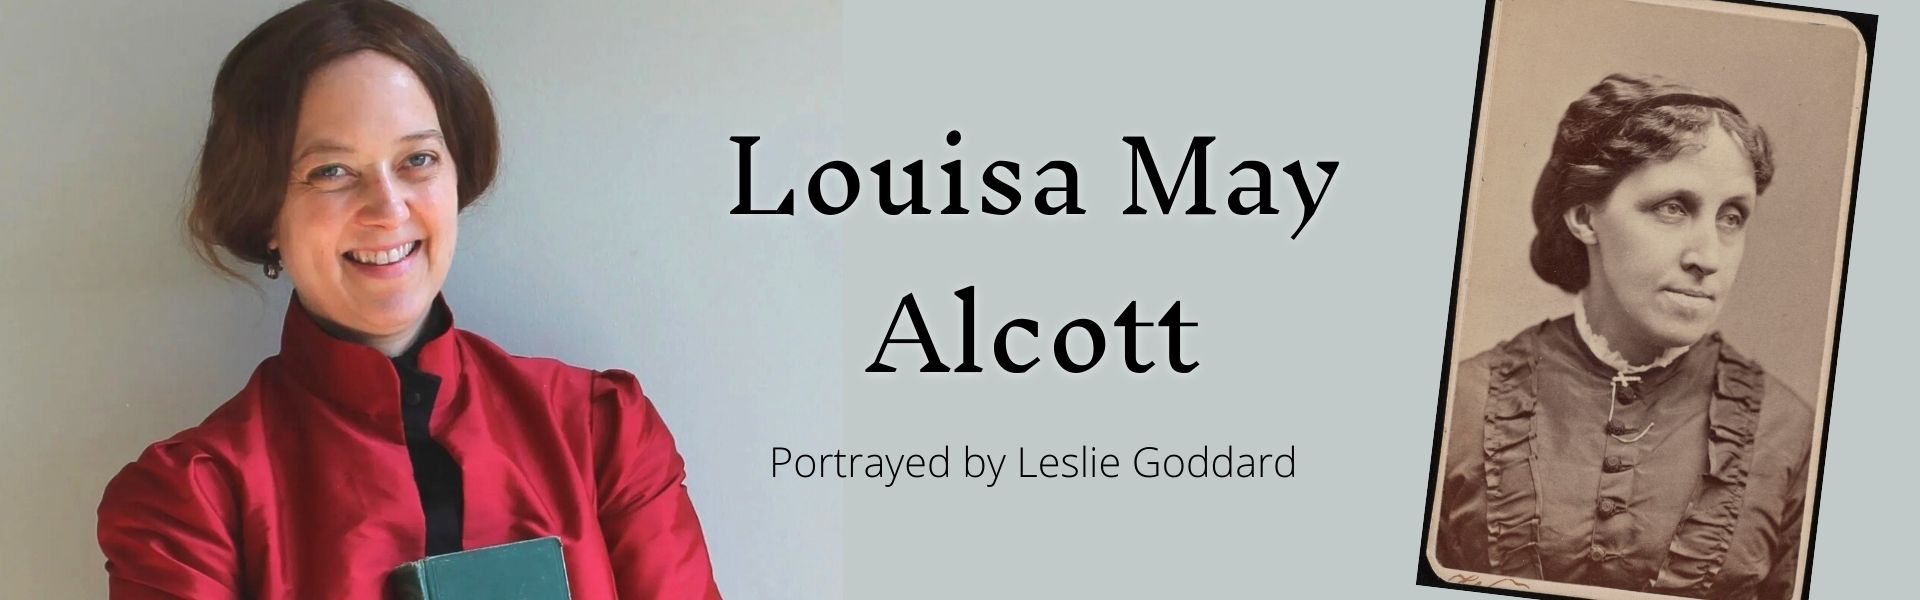 Leslie Goddard portrays Alcott event banner